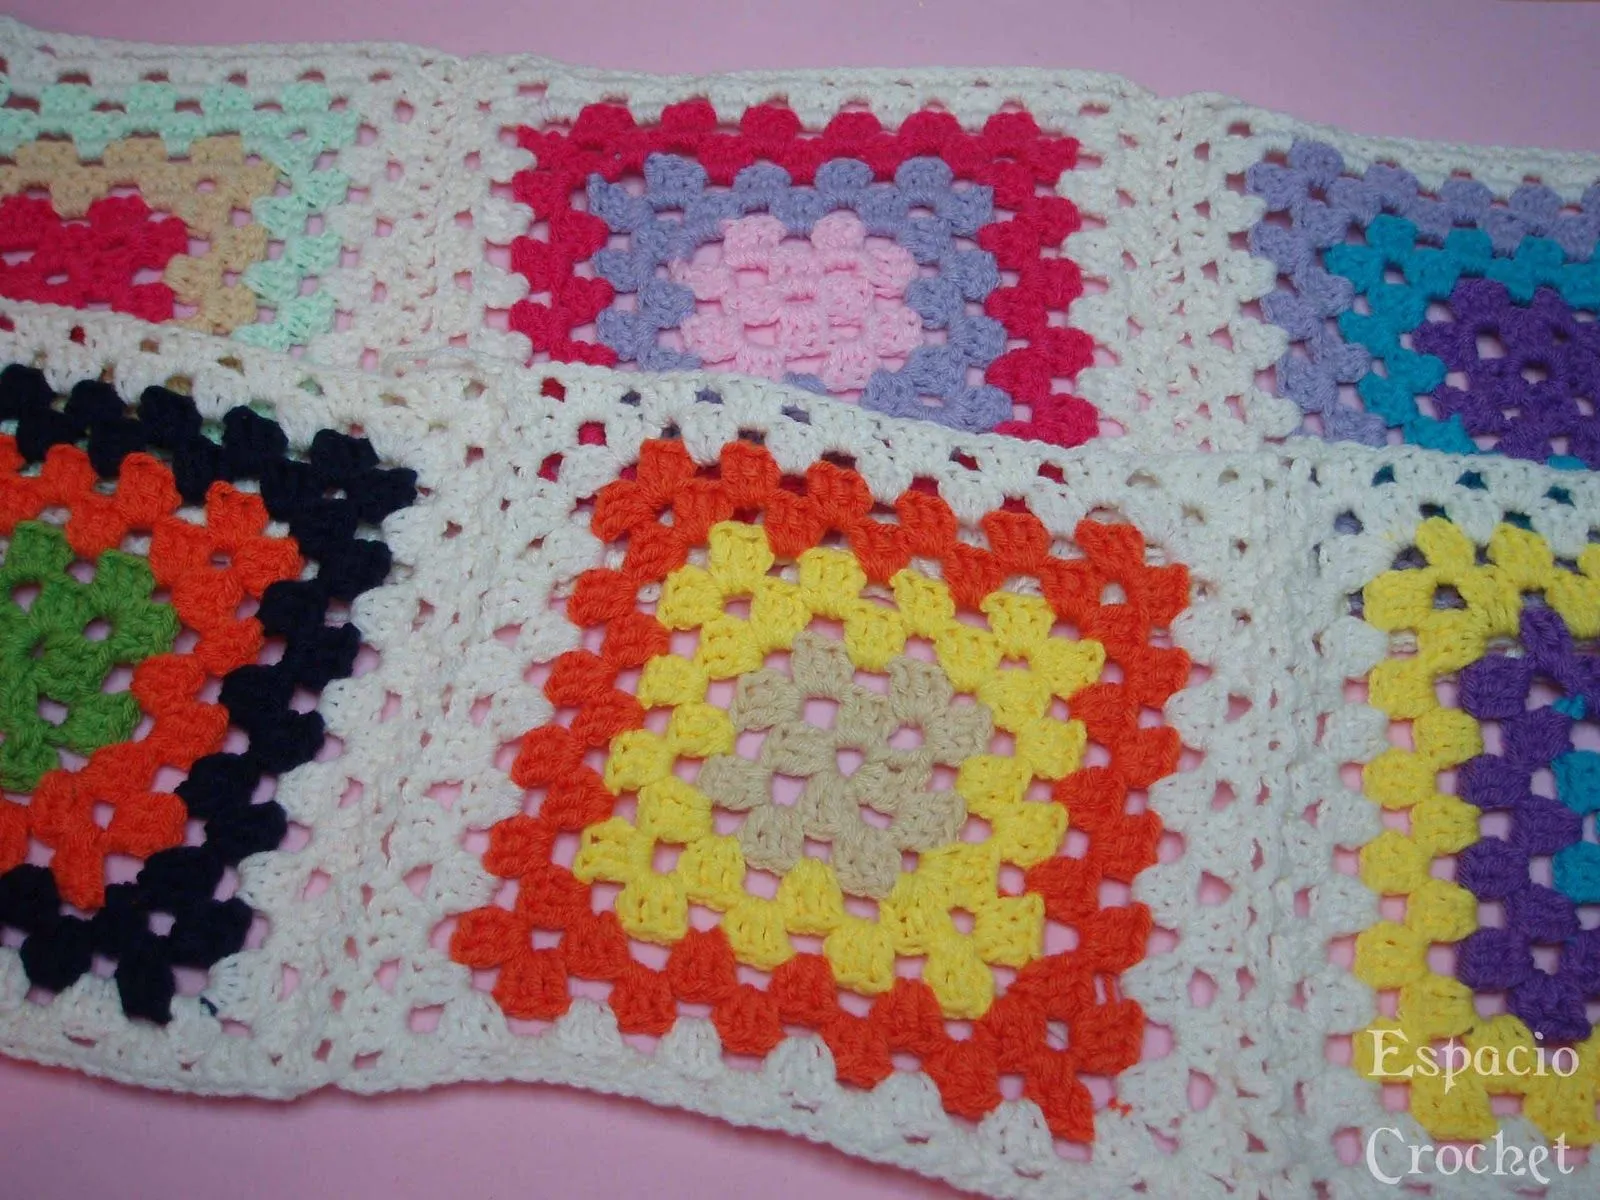 Espacio Crochet: Cuadros de crochet / Crochet squares